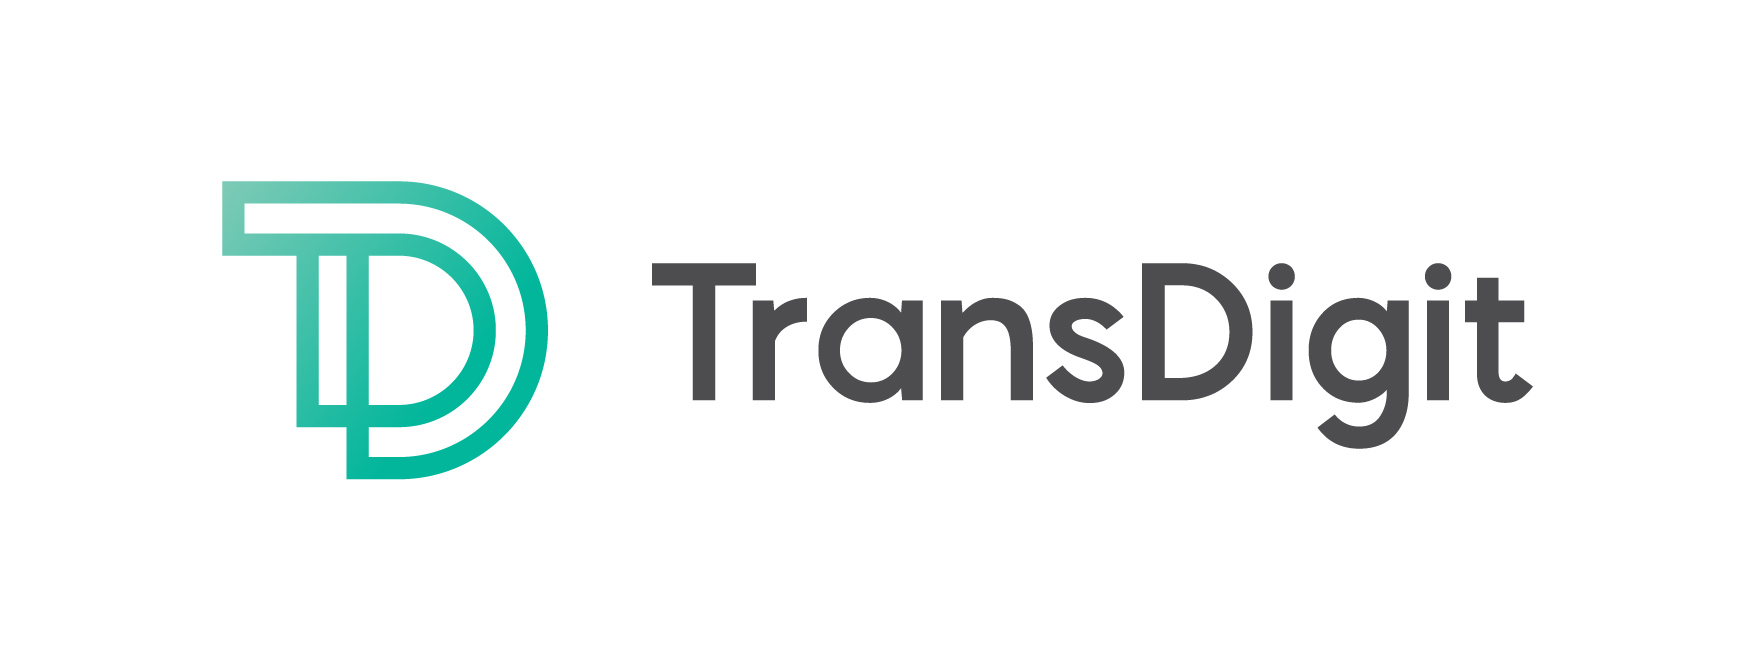 Arhiv: TransDigit 2.0 - 2. letna konferenca o digitalizaciji v prevajalski dejavnosti